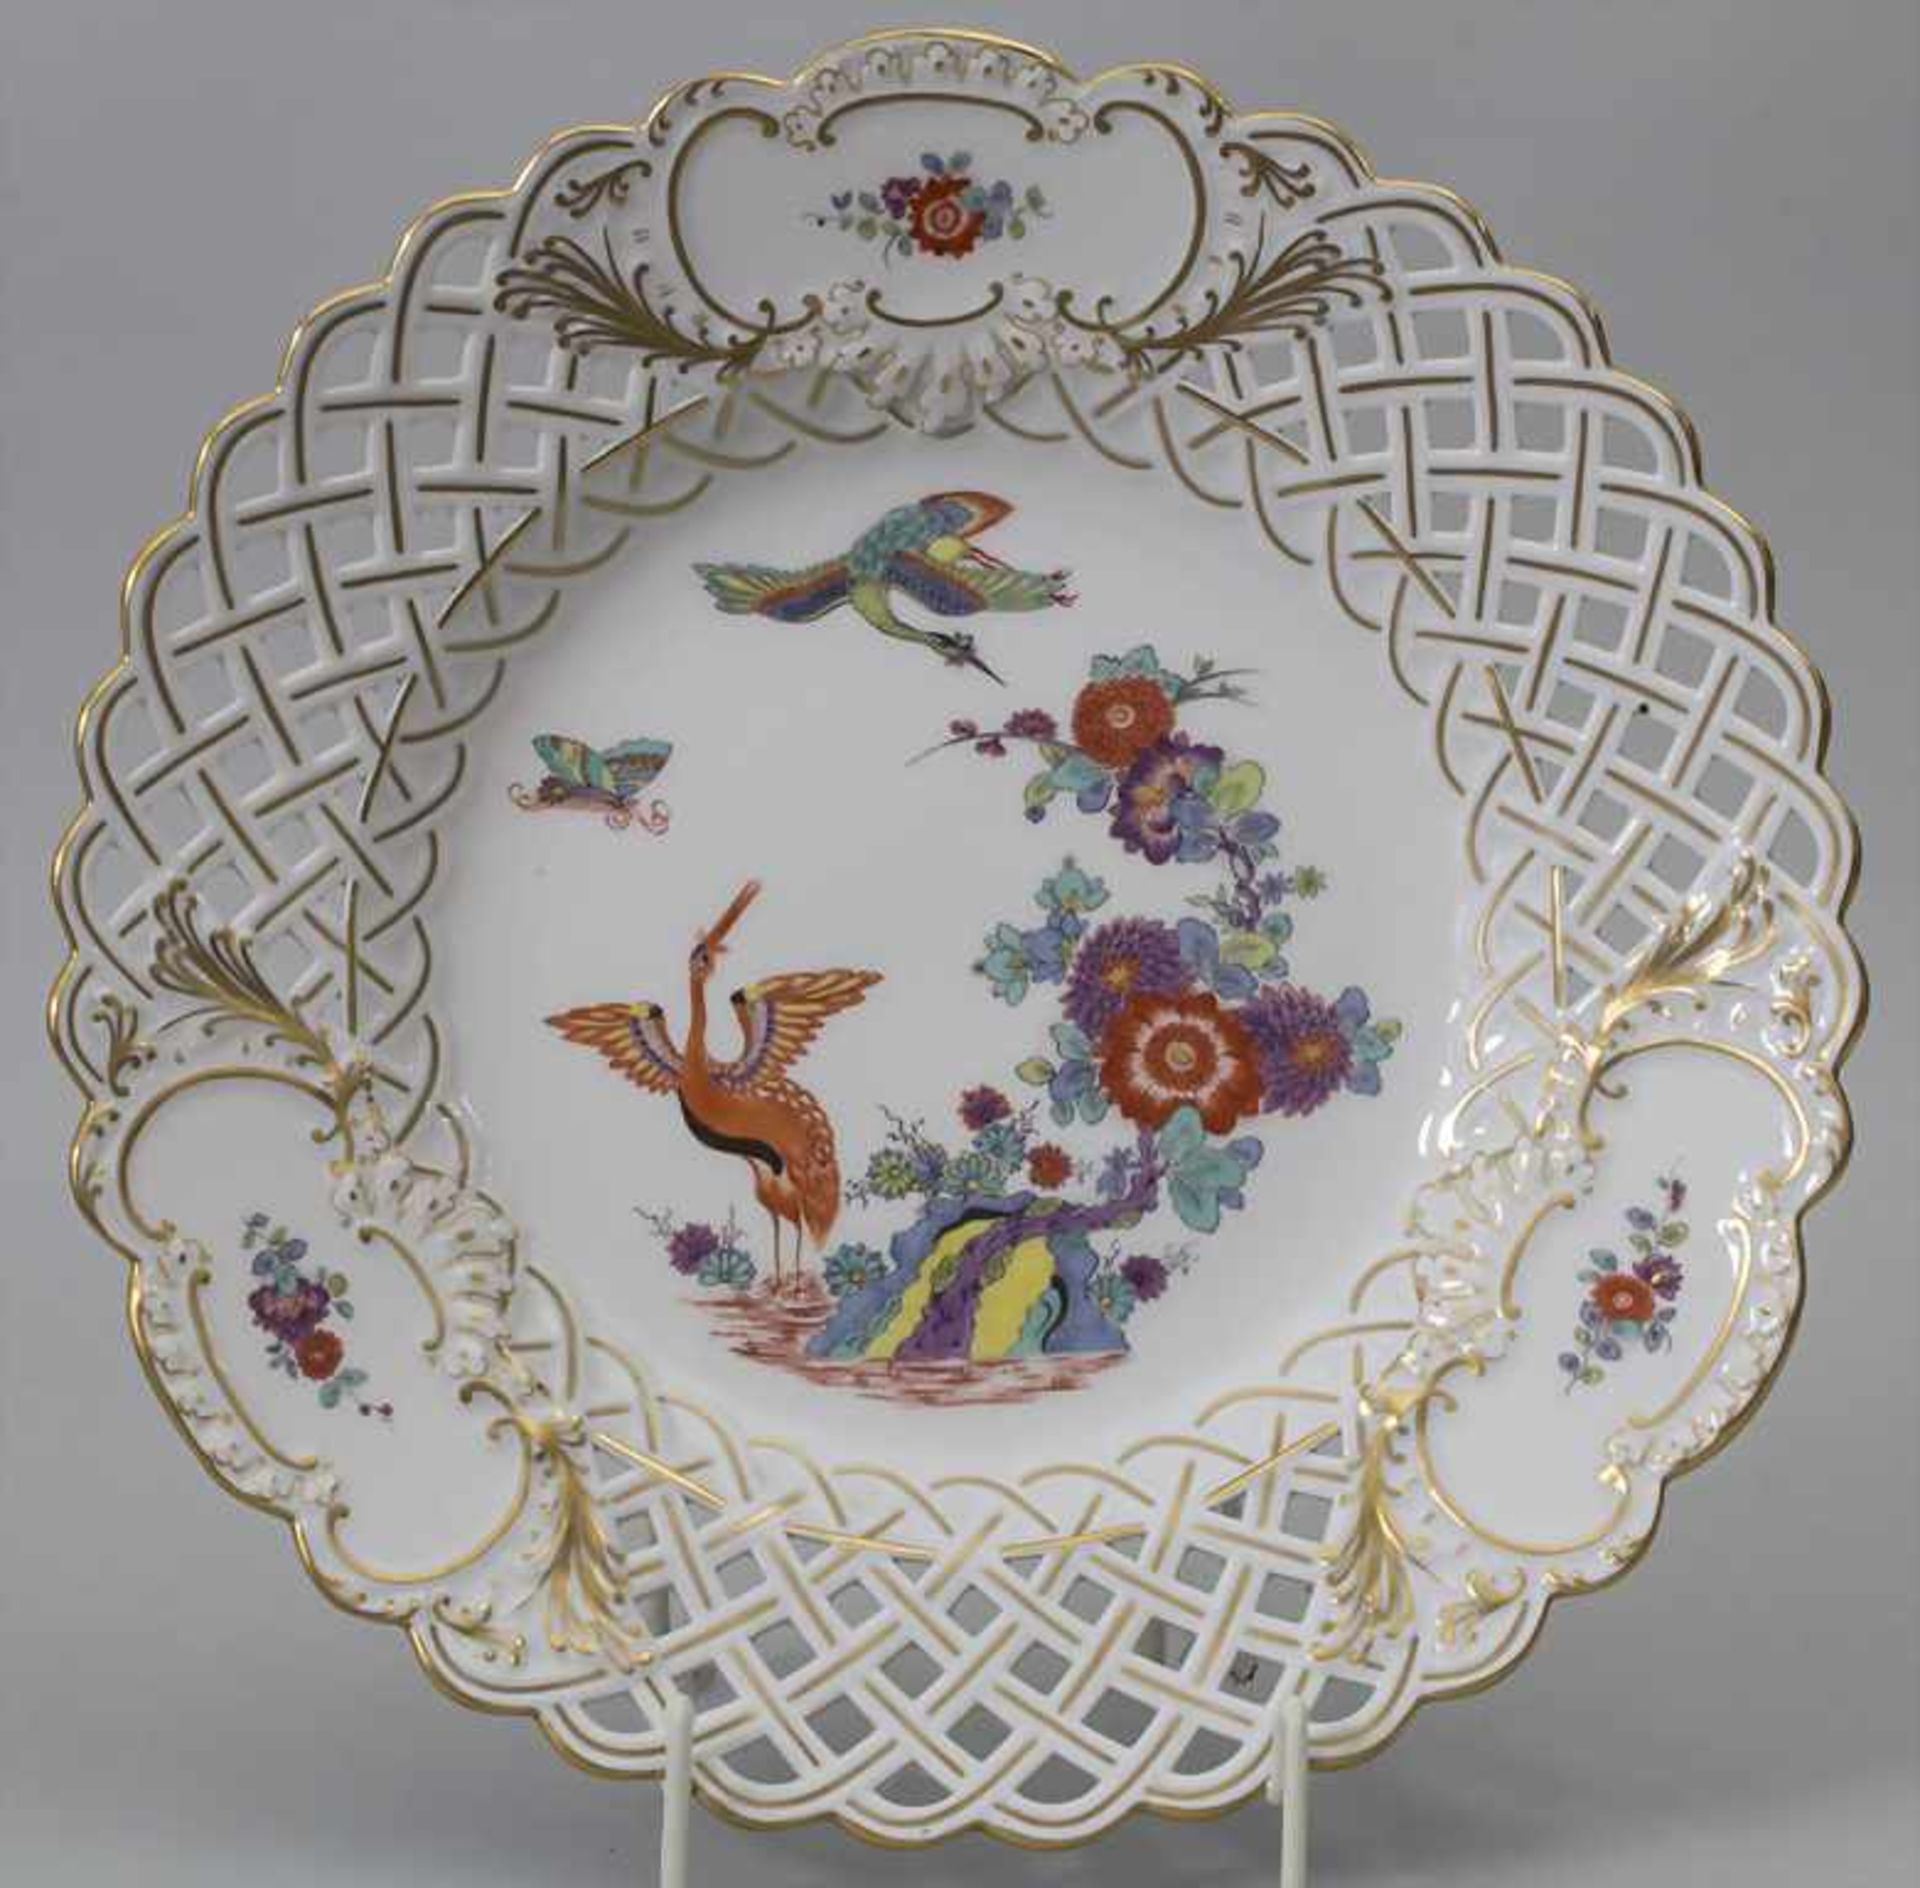 Zierteller / A decorative plate with Imari pattern, Meissen, 20. Jh.